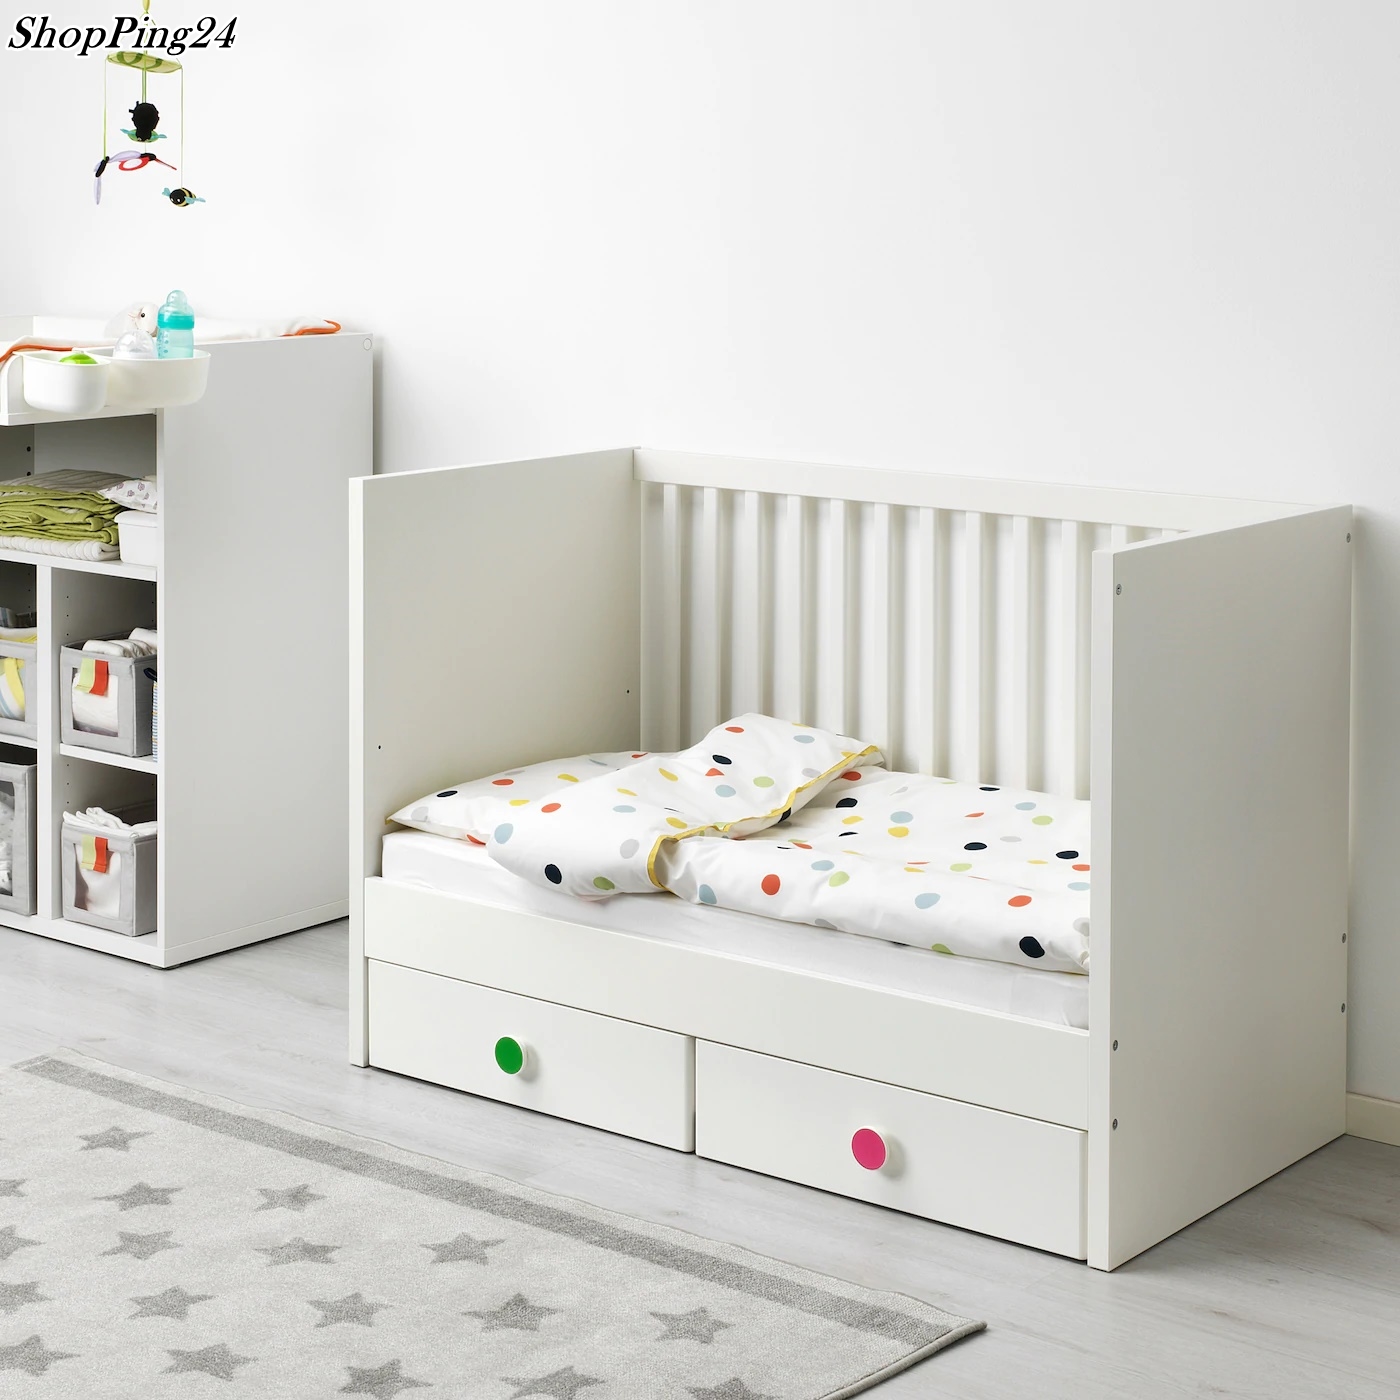 เตียงเด็กอ่อน  เตียงเด็กอ่อนพร้อมลิ้นชัก Baby Bed Baby Cot with drawers STUVAT FILLA 60 X 120 Cm